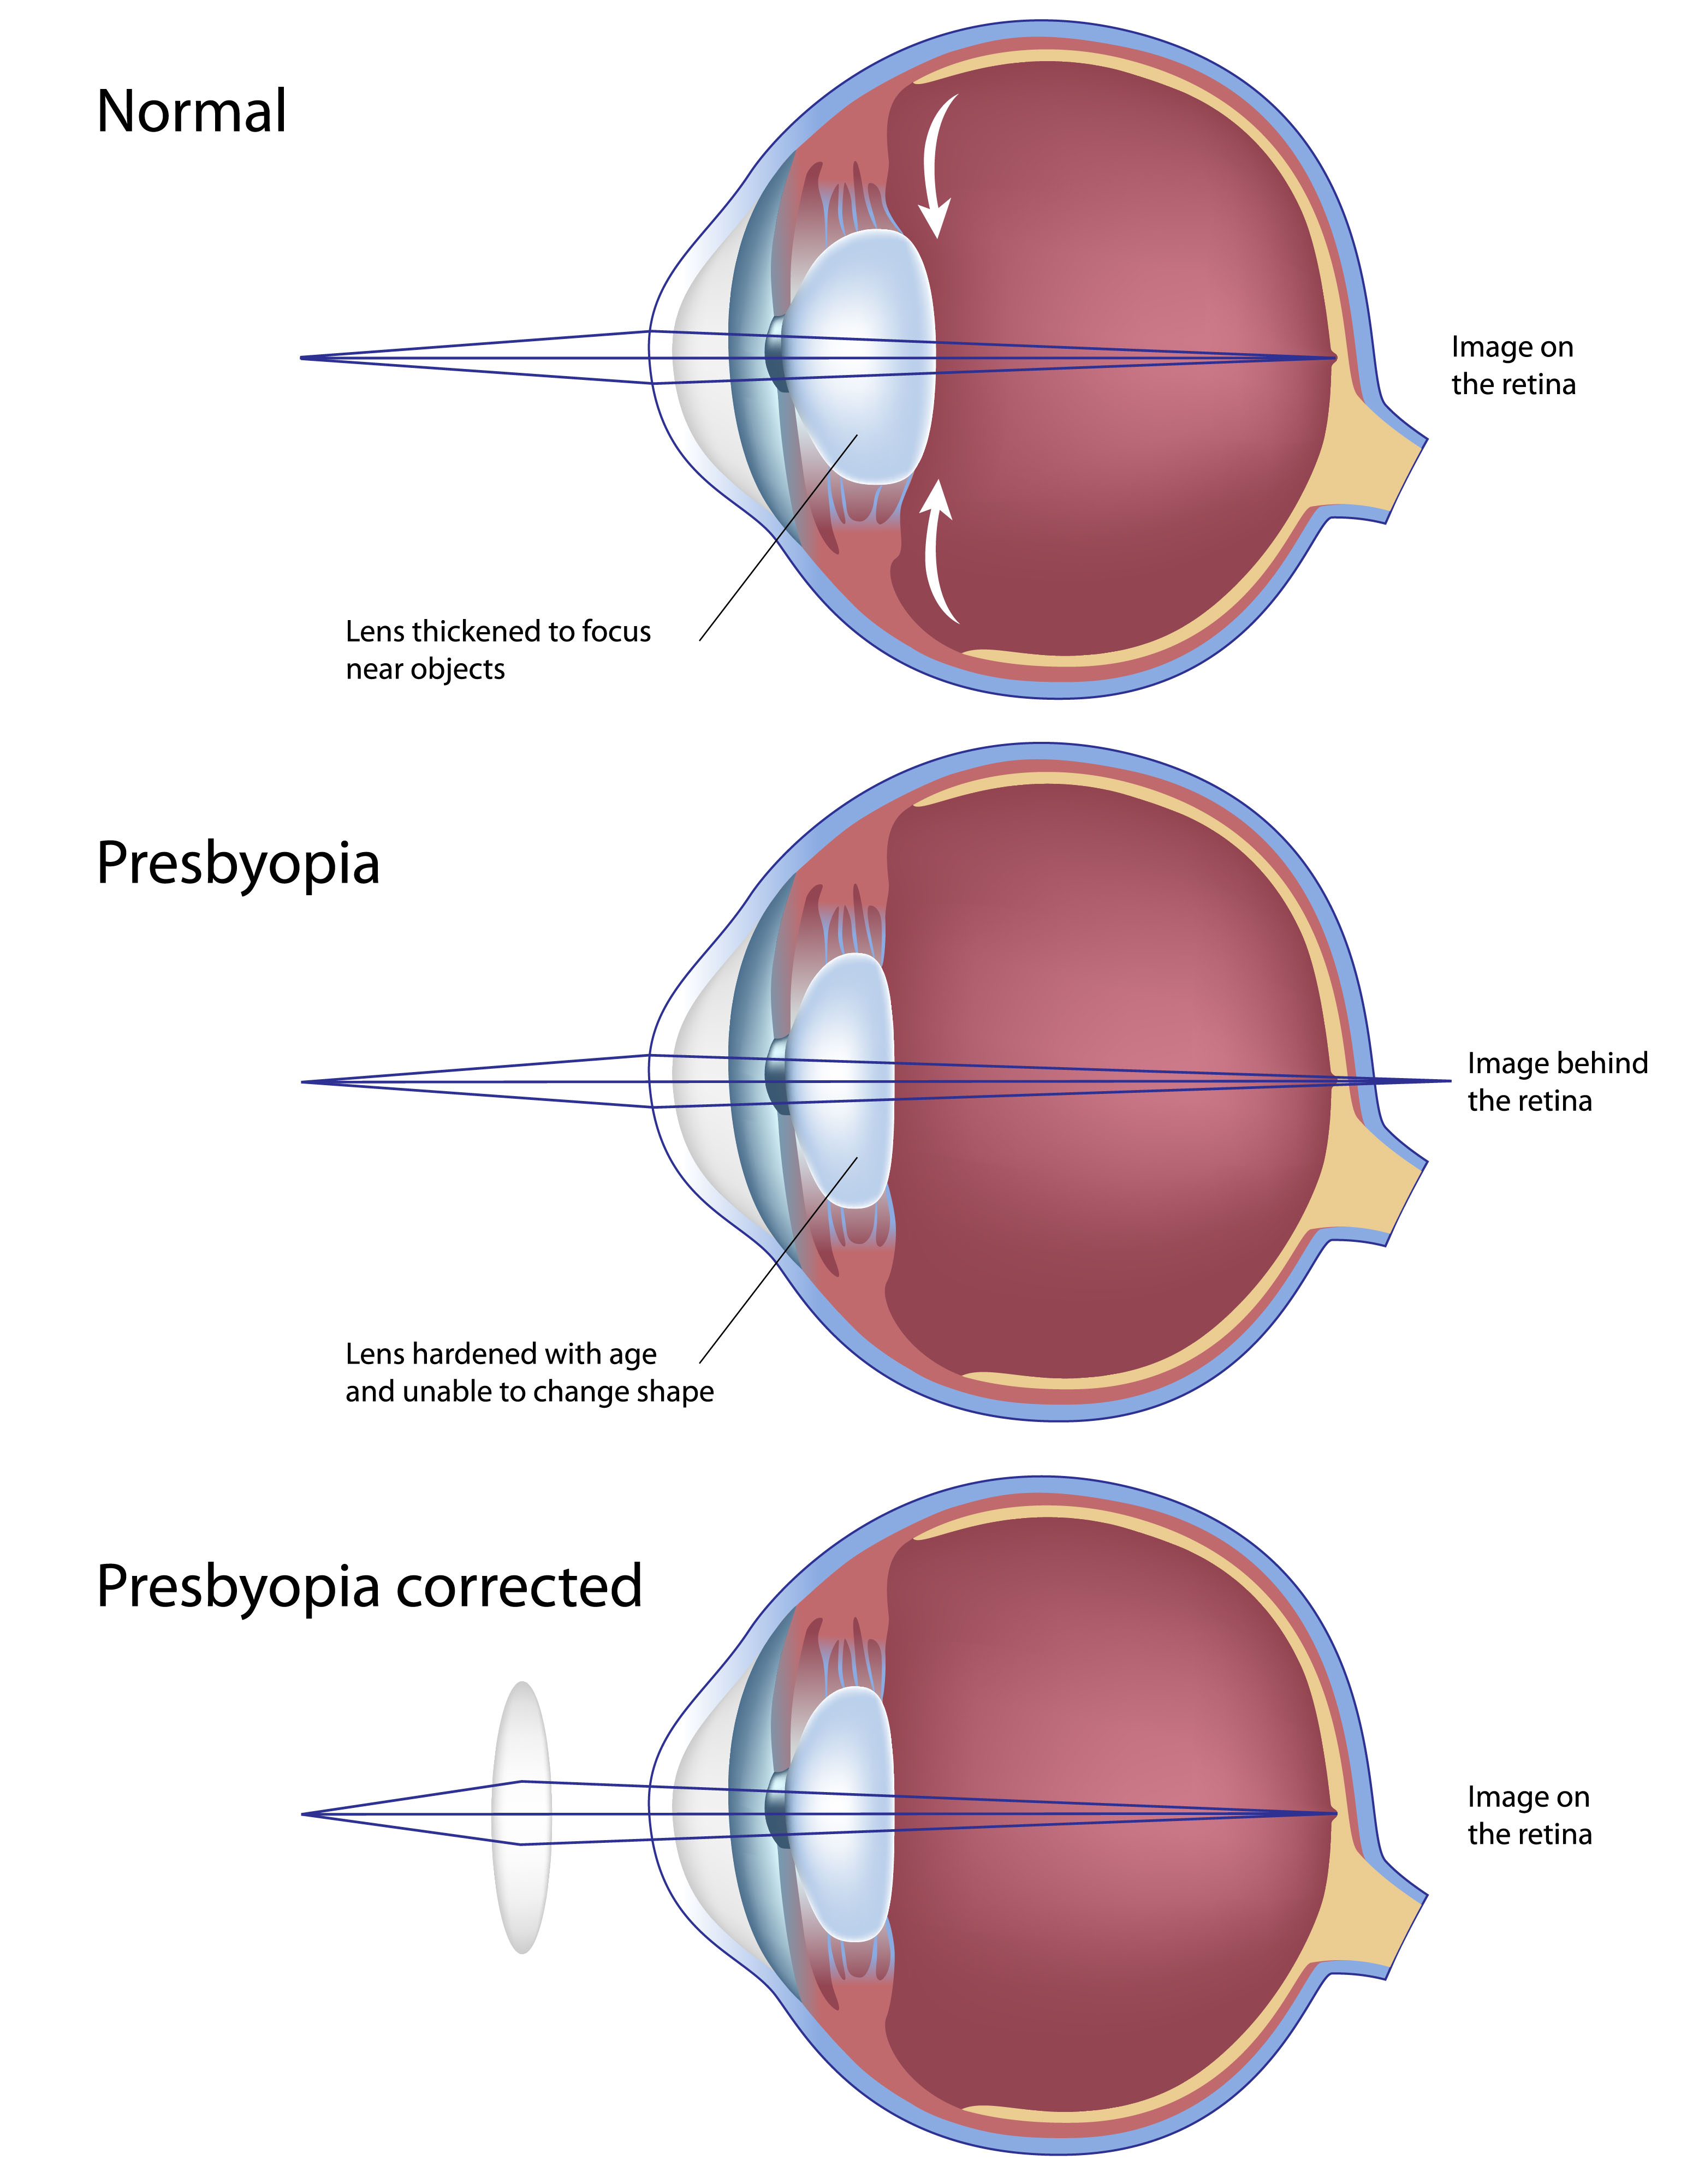 myopia és presbyopia)